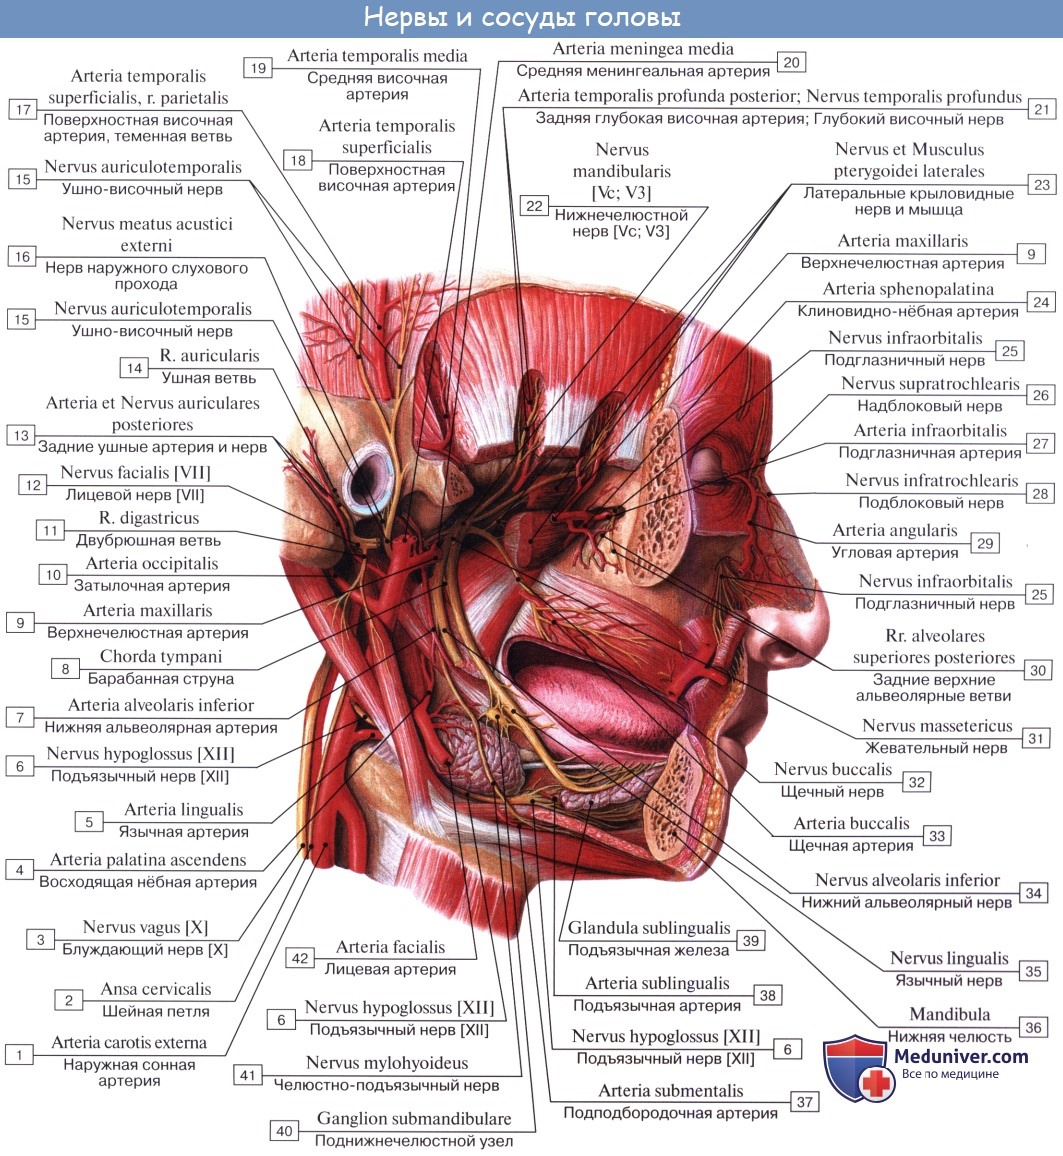 Анатомия: Язык. Строение языка. Мышцы языка. Иннервация, кровоснобжение языка